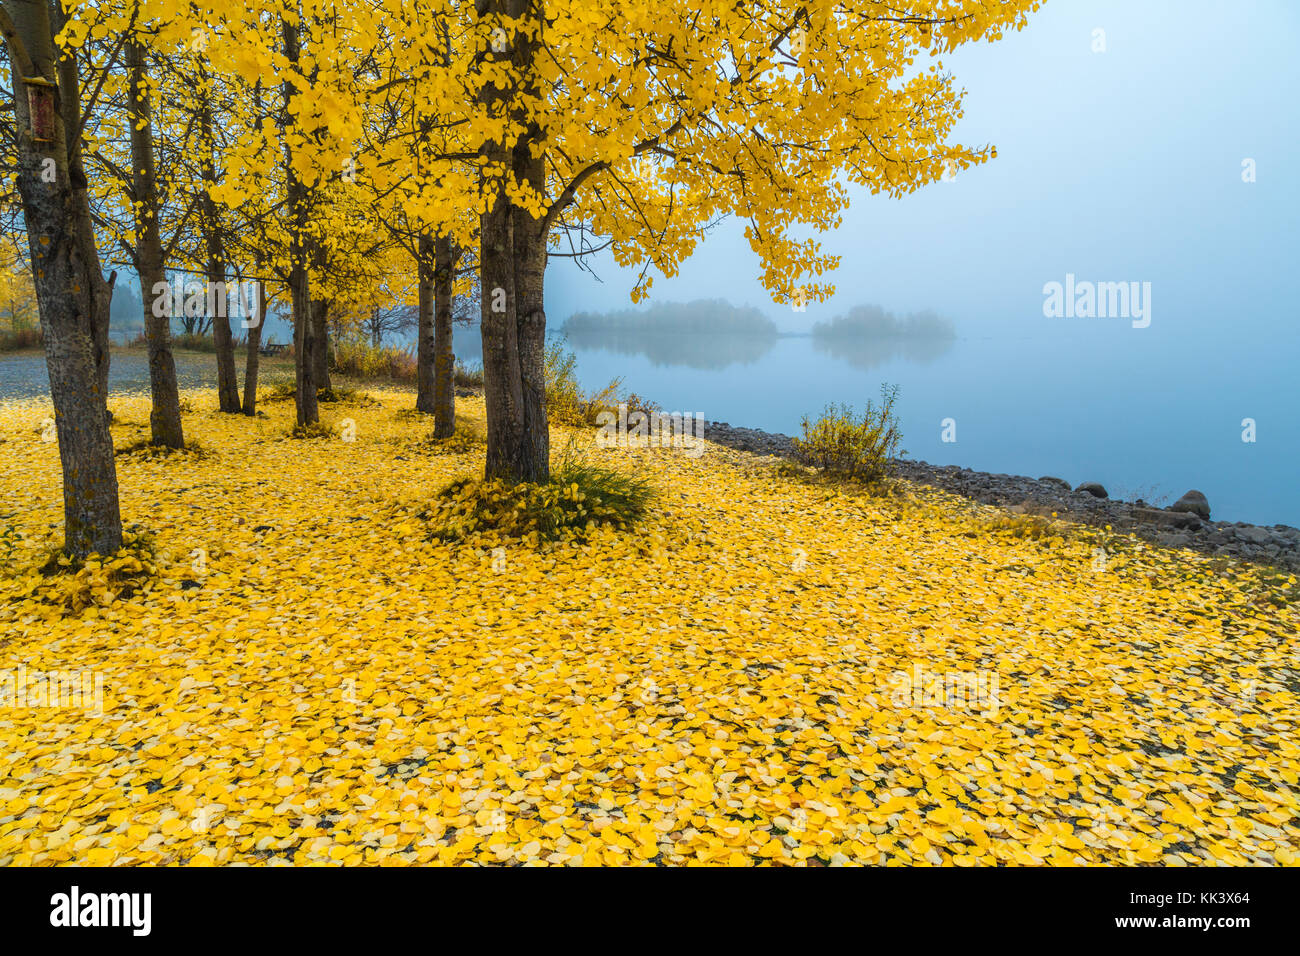 Aspenbaum mit gelben Blättern und vielen Blättern auf dem Boden, Nebel im Hintergrund und Bäume reflektieren im Lule Fluss, Jokkmokk County, Schwedisch Stockfoto